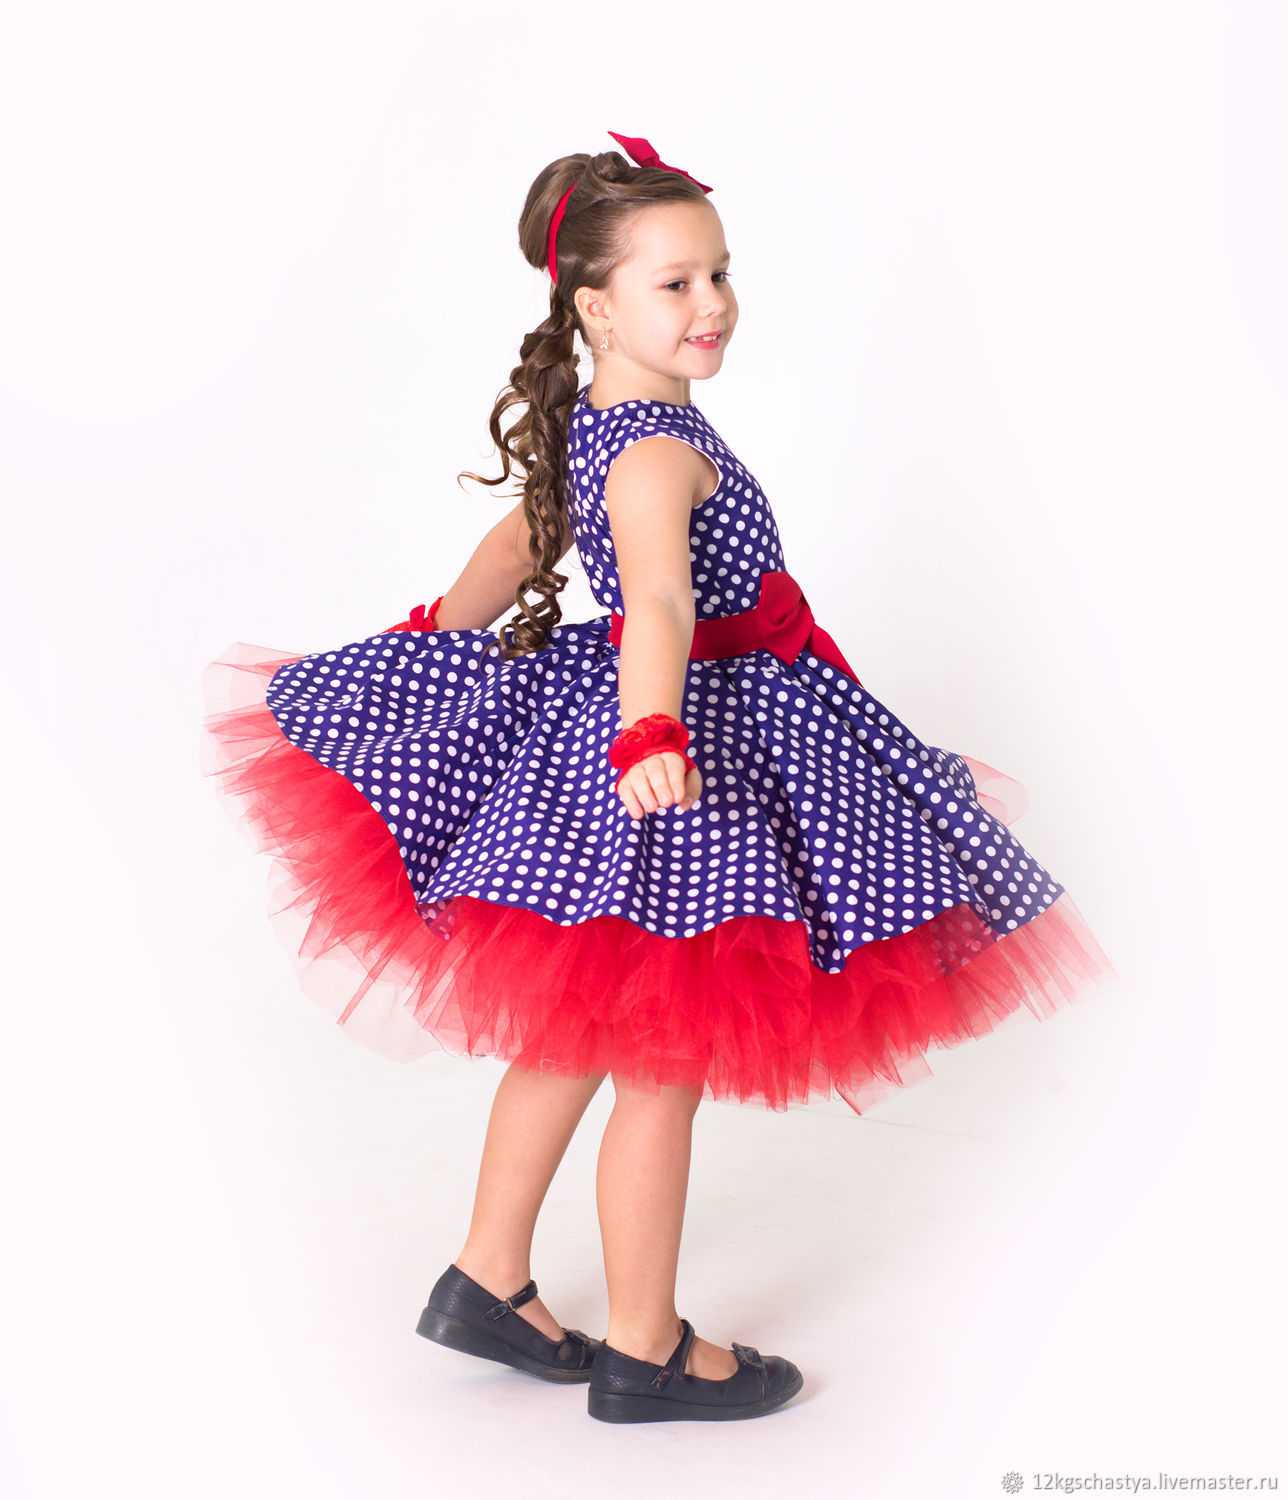 Выпускное платье для детского сада 2021: правила выбора